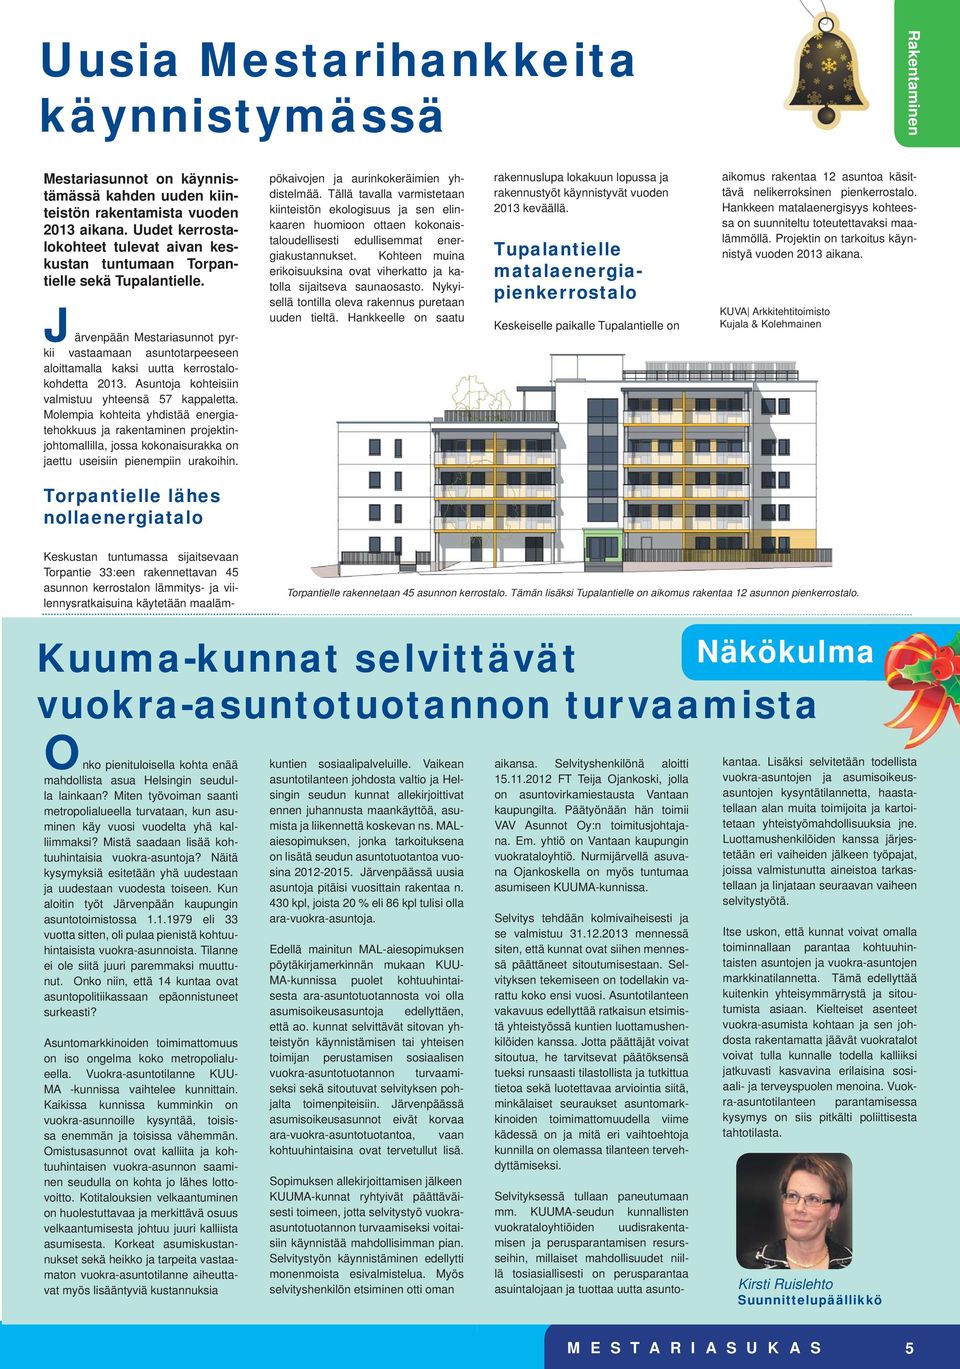 Järvenpään Mestariasunnot pyrkii vastaamaan asuntotarpeeseen aloittamalla kaksi uutta kerrostalokohdetta 2013. Asuntoja kohteisiin valmistuu yhteensä 57 kappaletta.